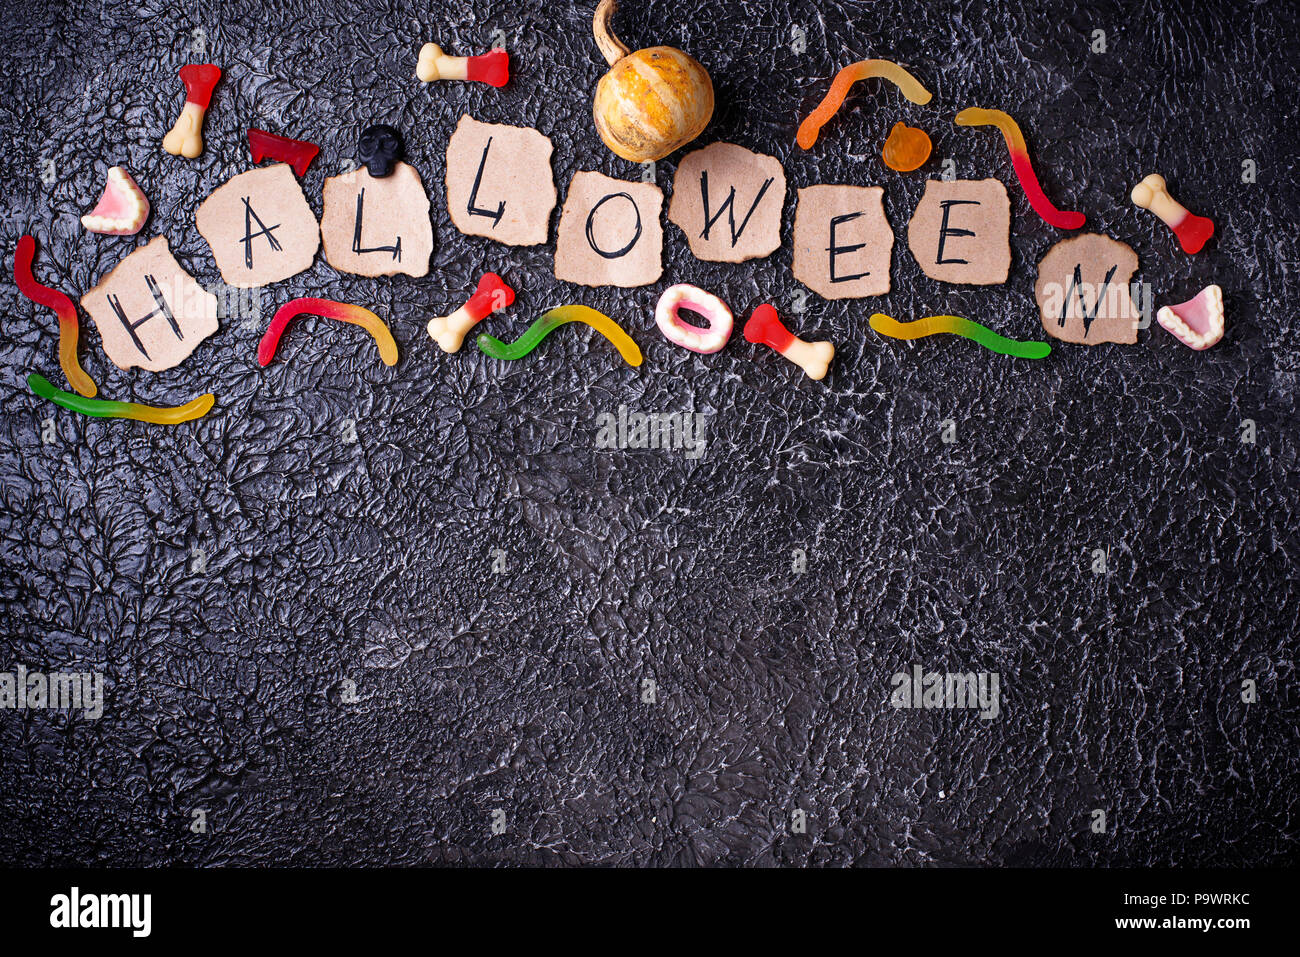 Arrière-plan avec des friandises Halloween créatif Banque D'Images